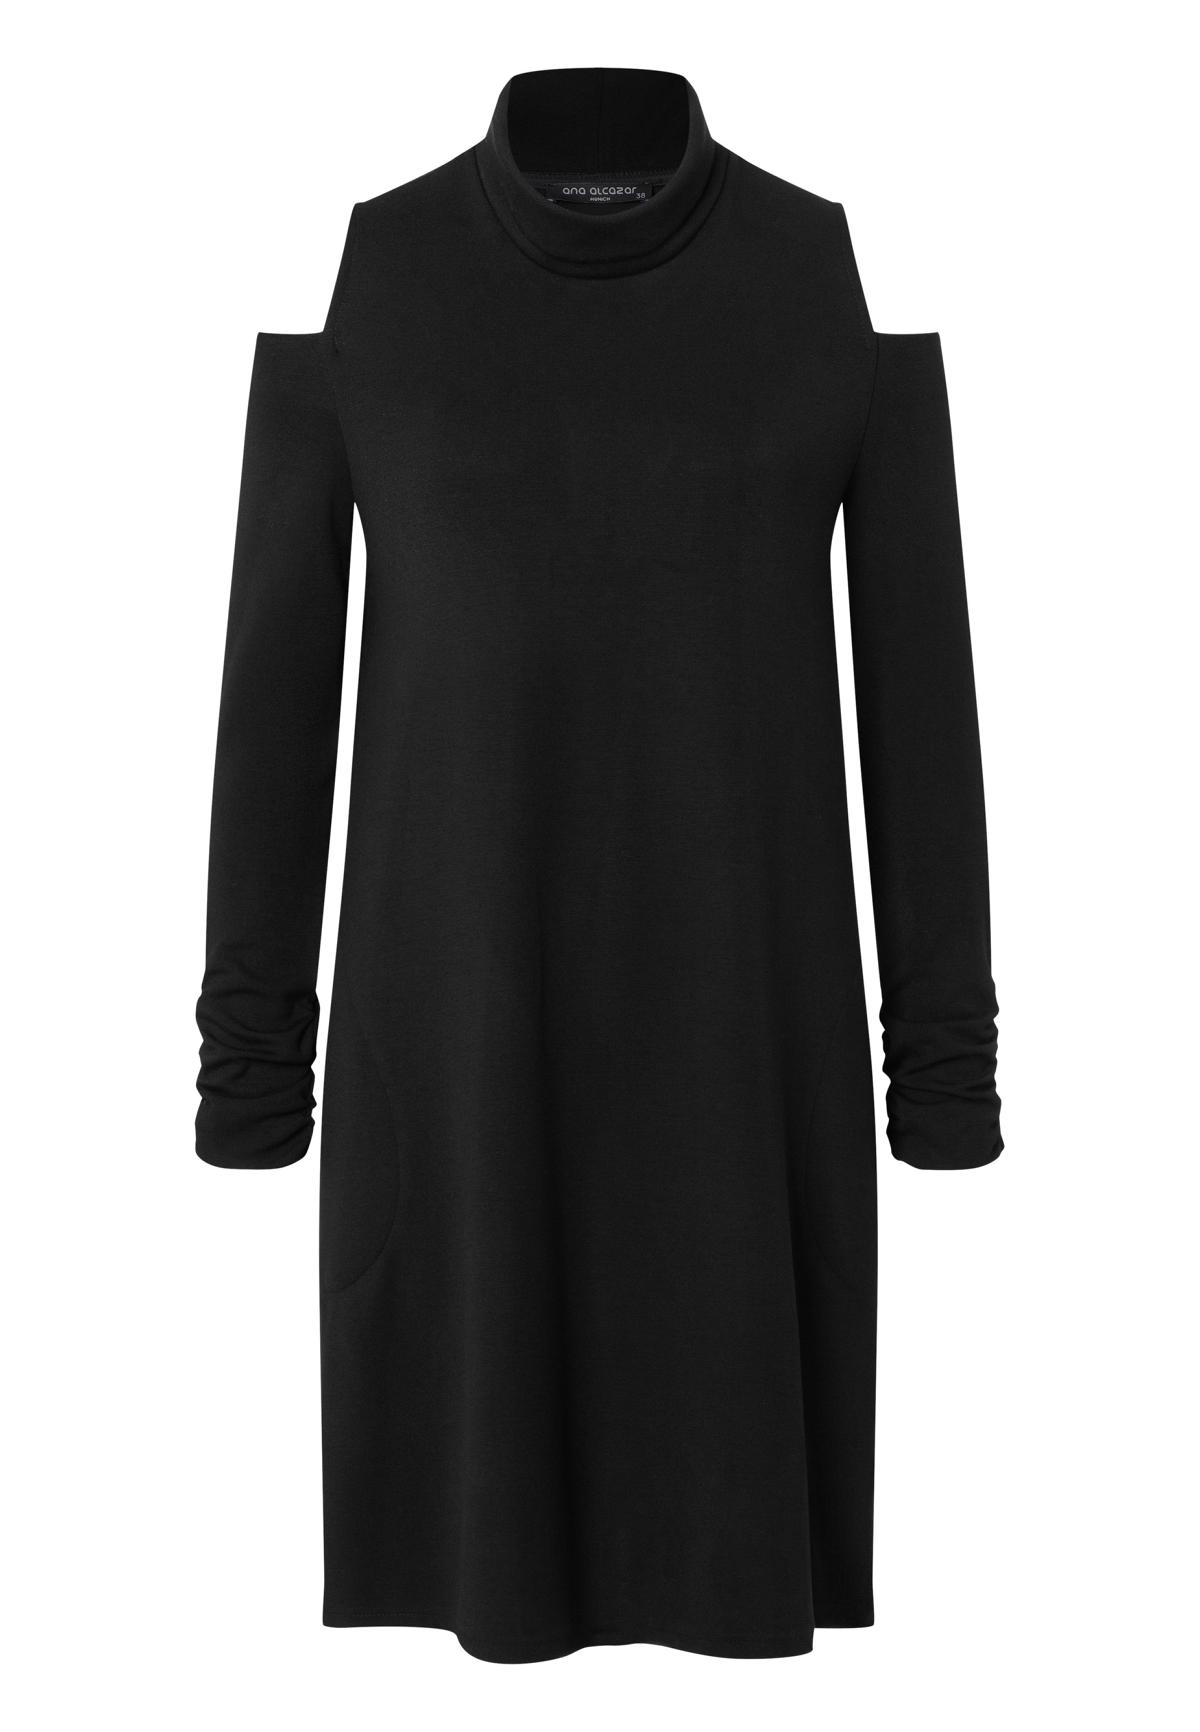 ANA ALCAZAR 040204-3427 Damen Kleid 60s dress cut out stretch original black